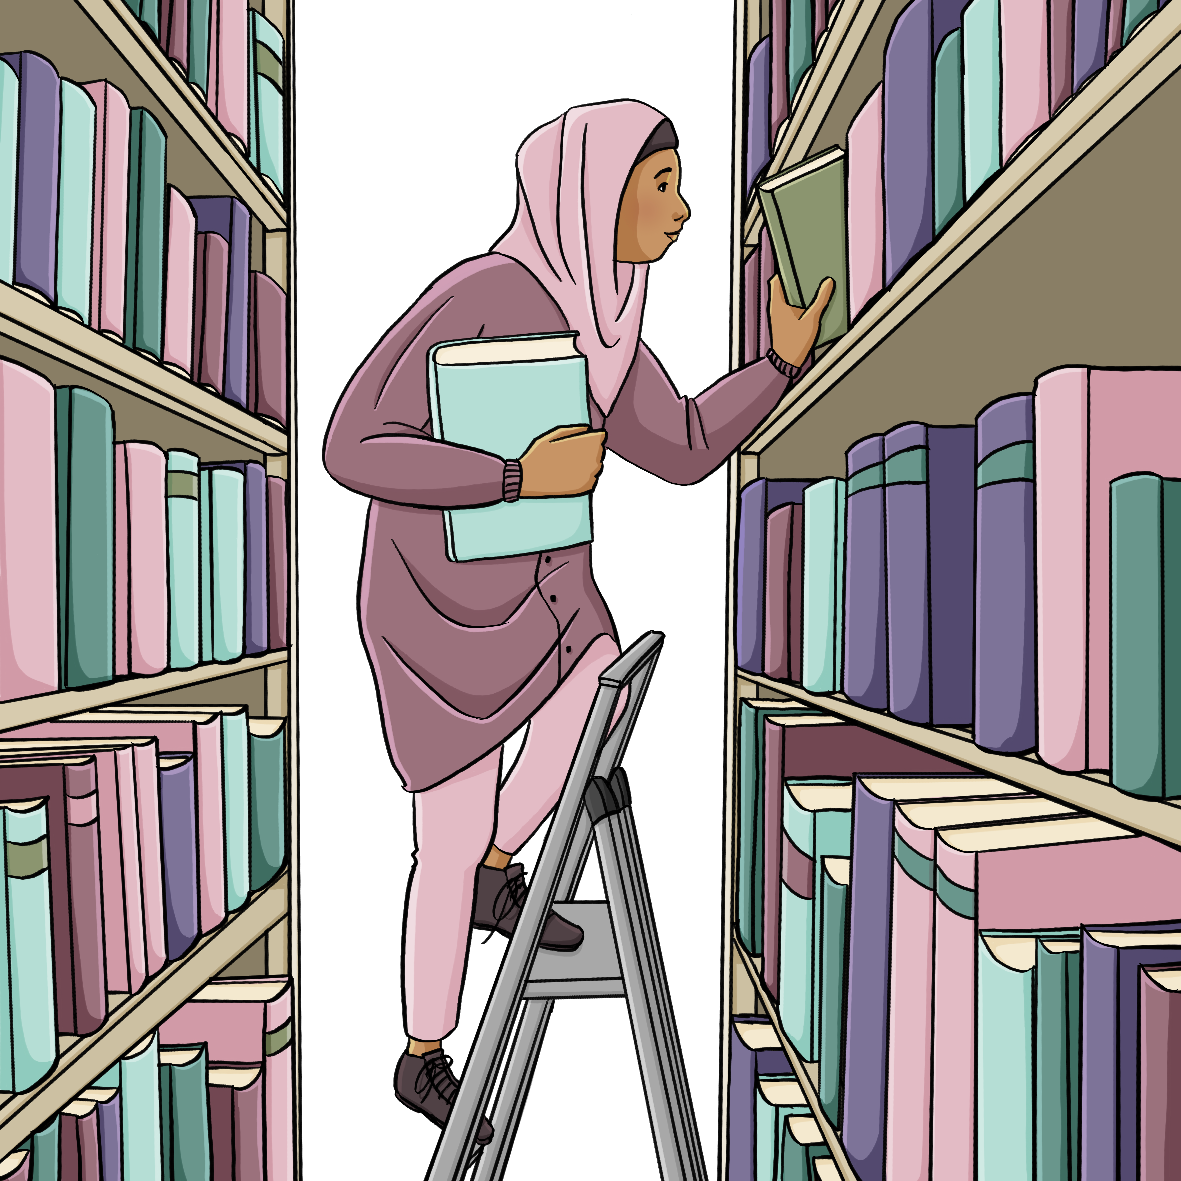 Eine Frau steht auf einer Leiter und ordnet Bücher in ein Regal ein.